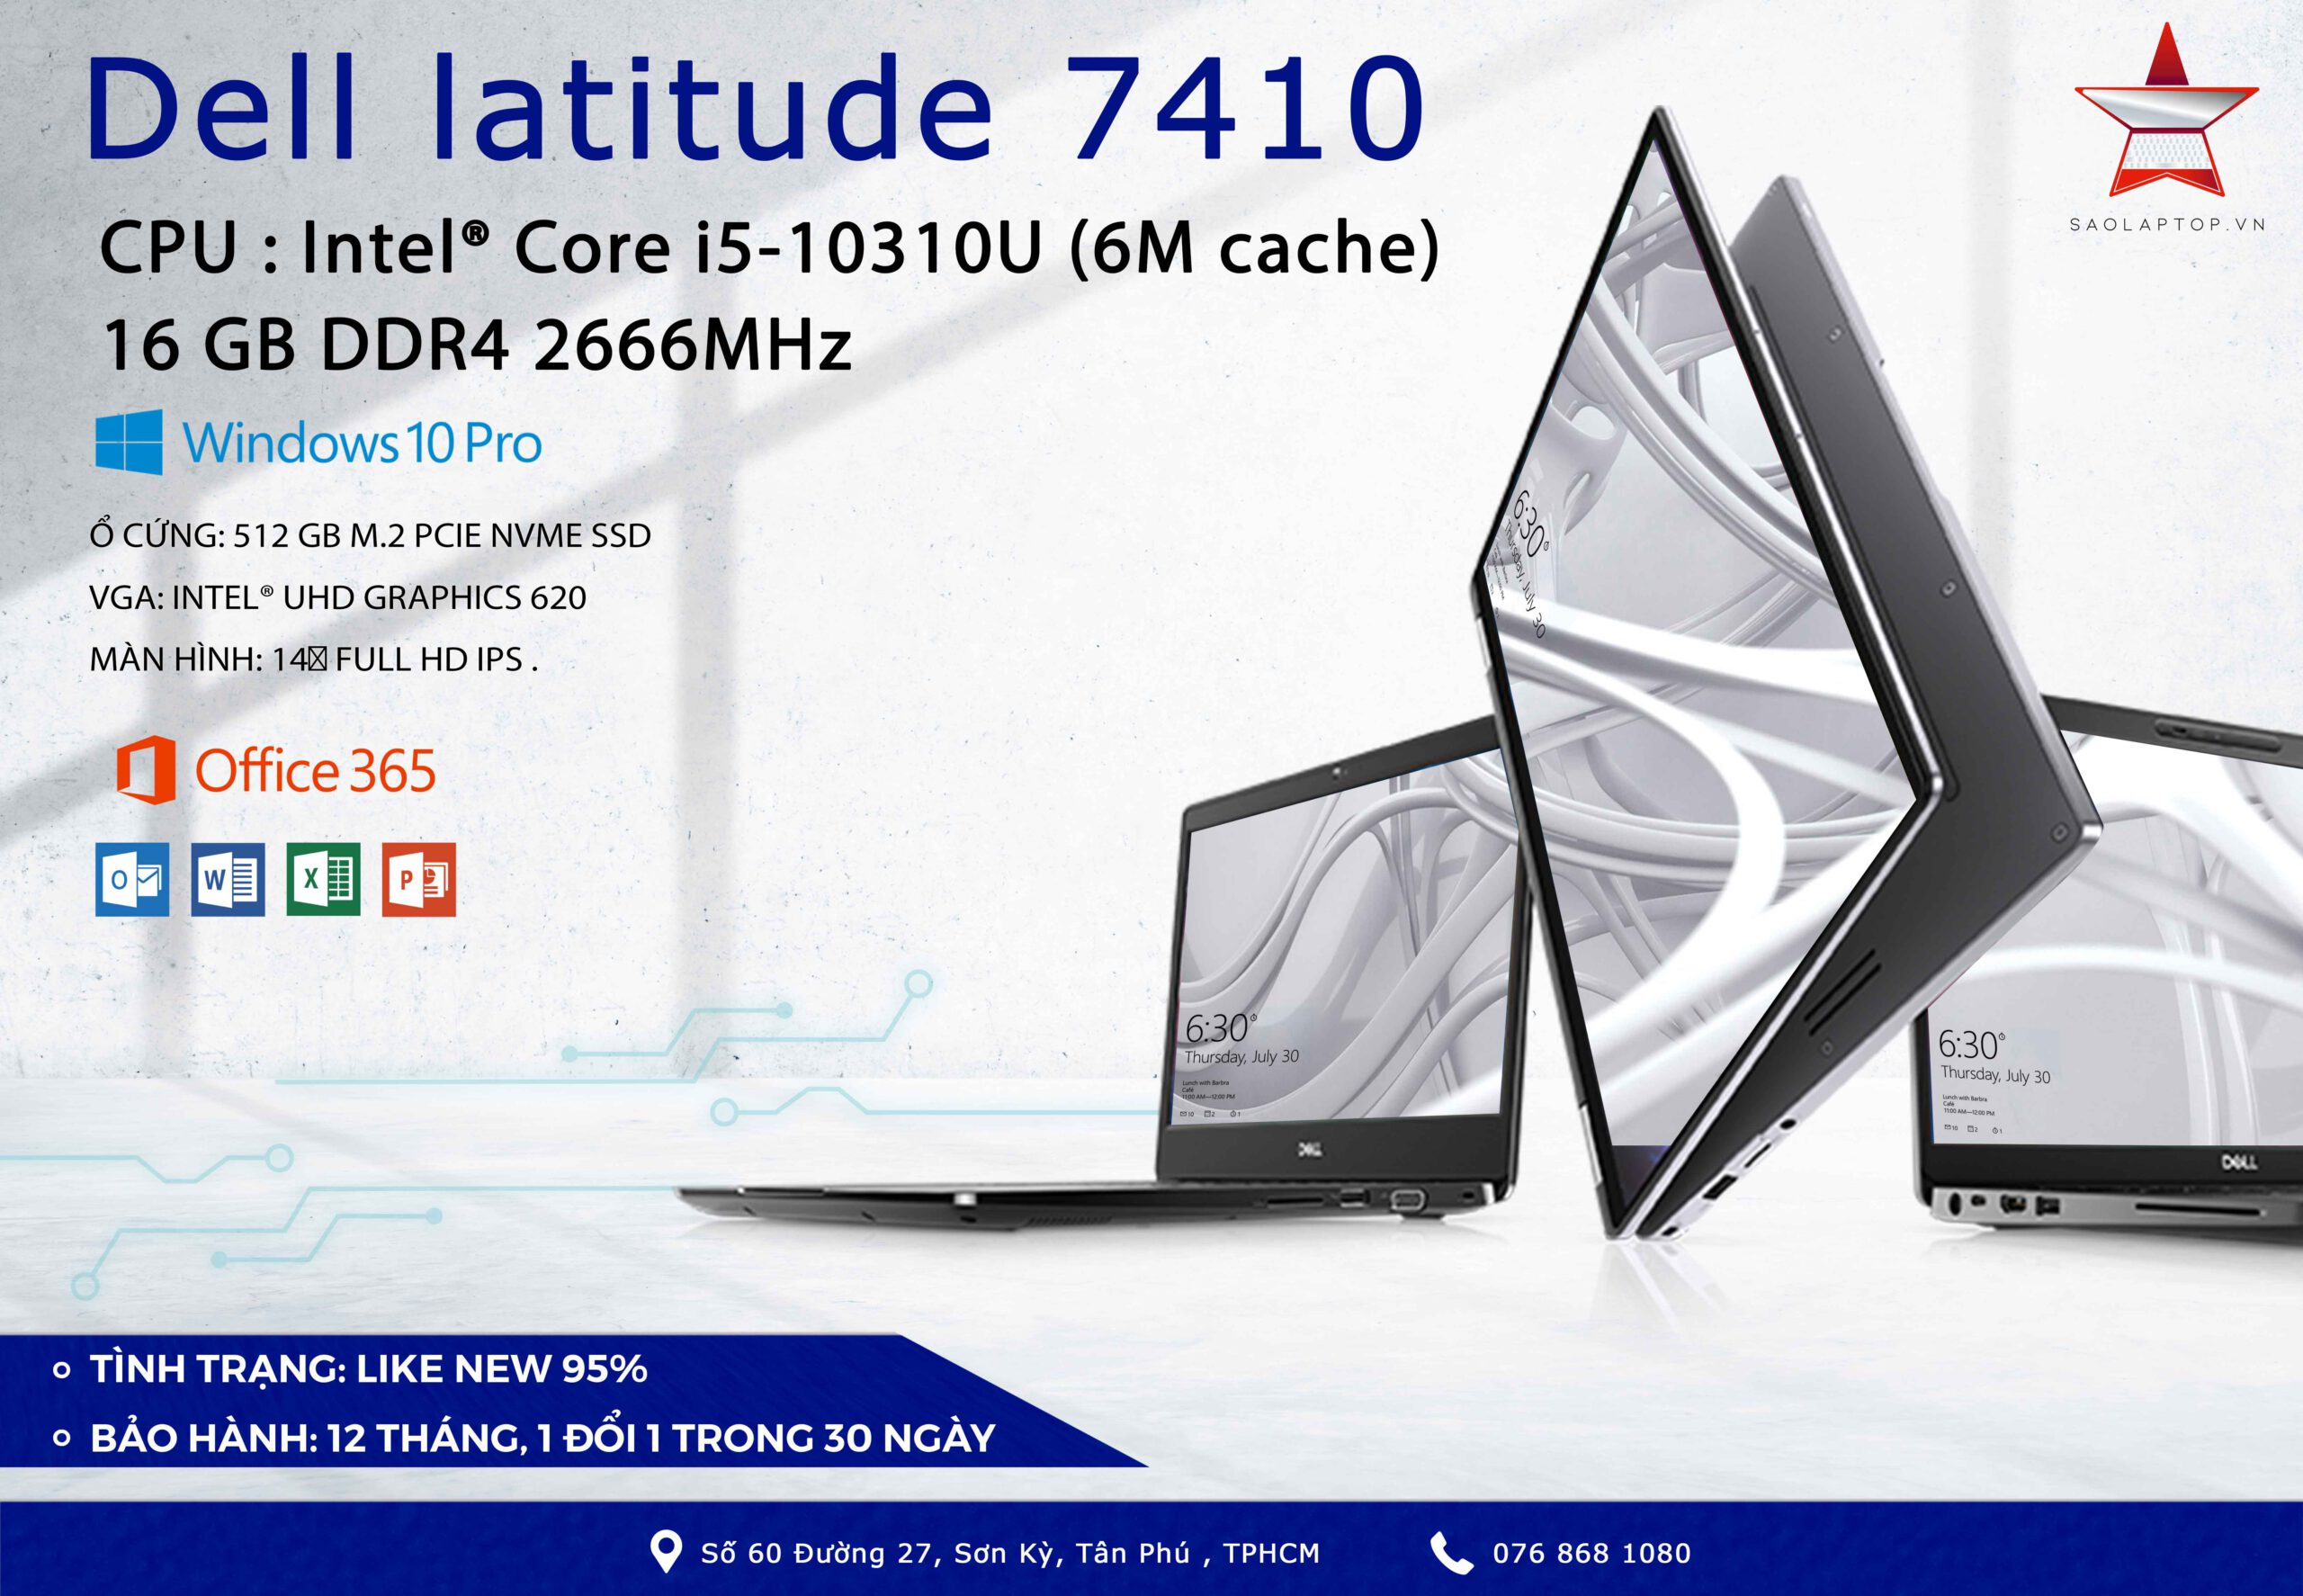 DELL Latitude 7410 bản FHD  saolaptop.vn